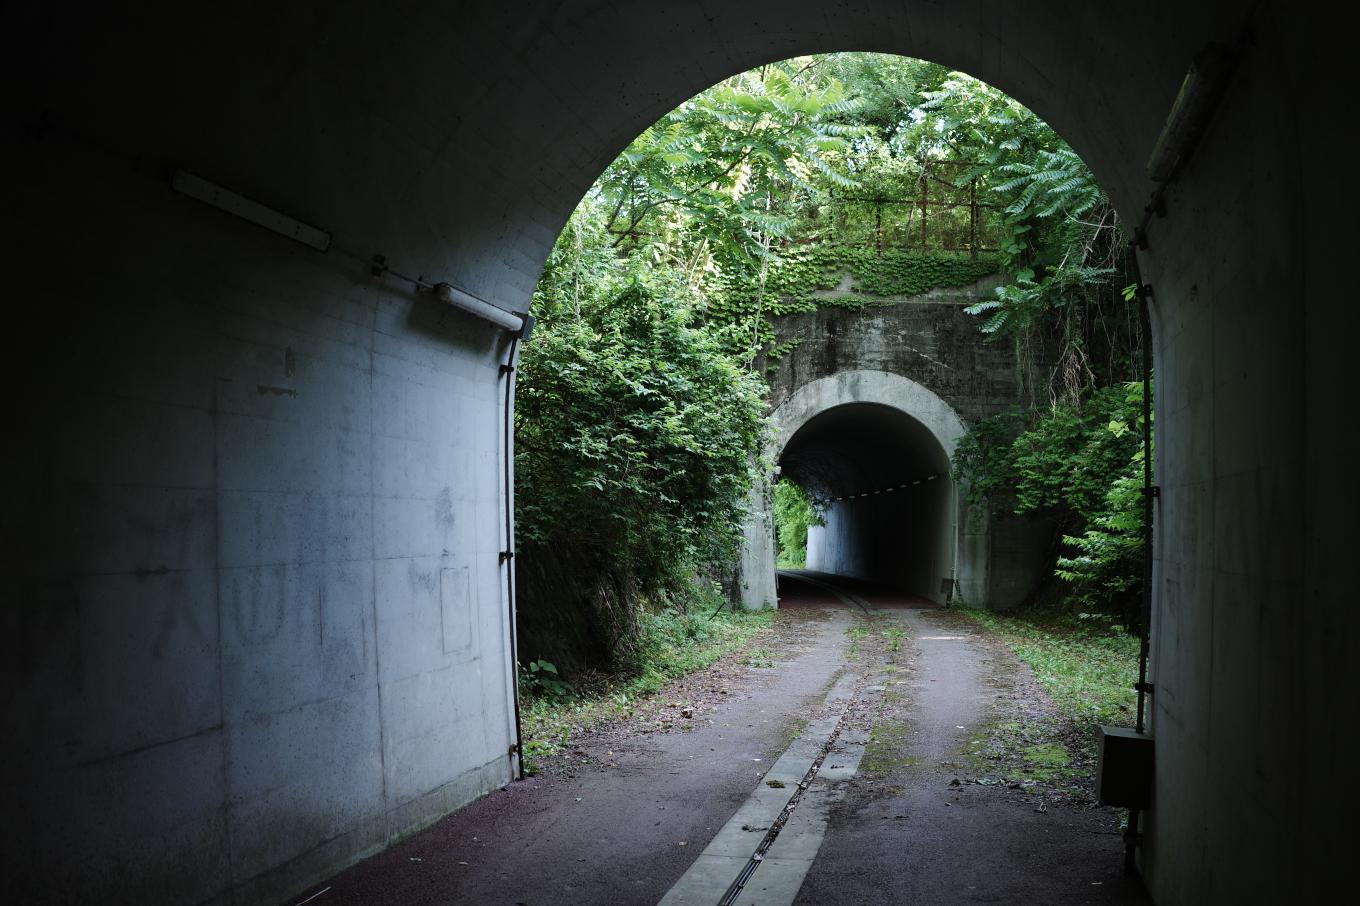 トンネル内から眺める次のトンネル。